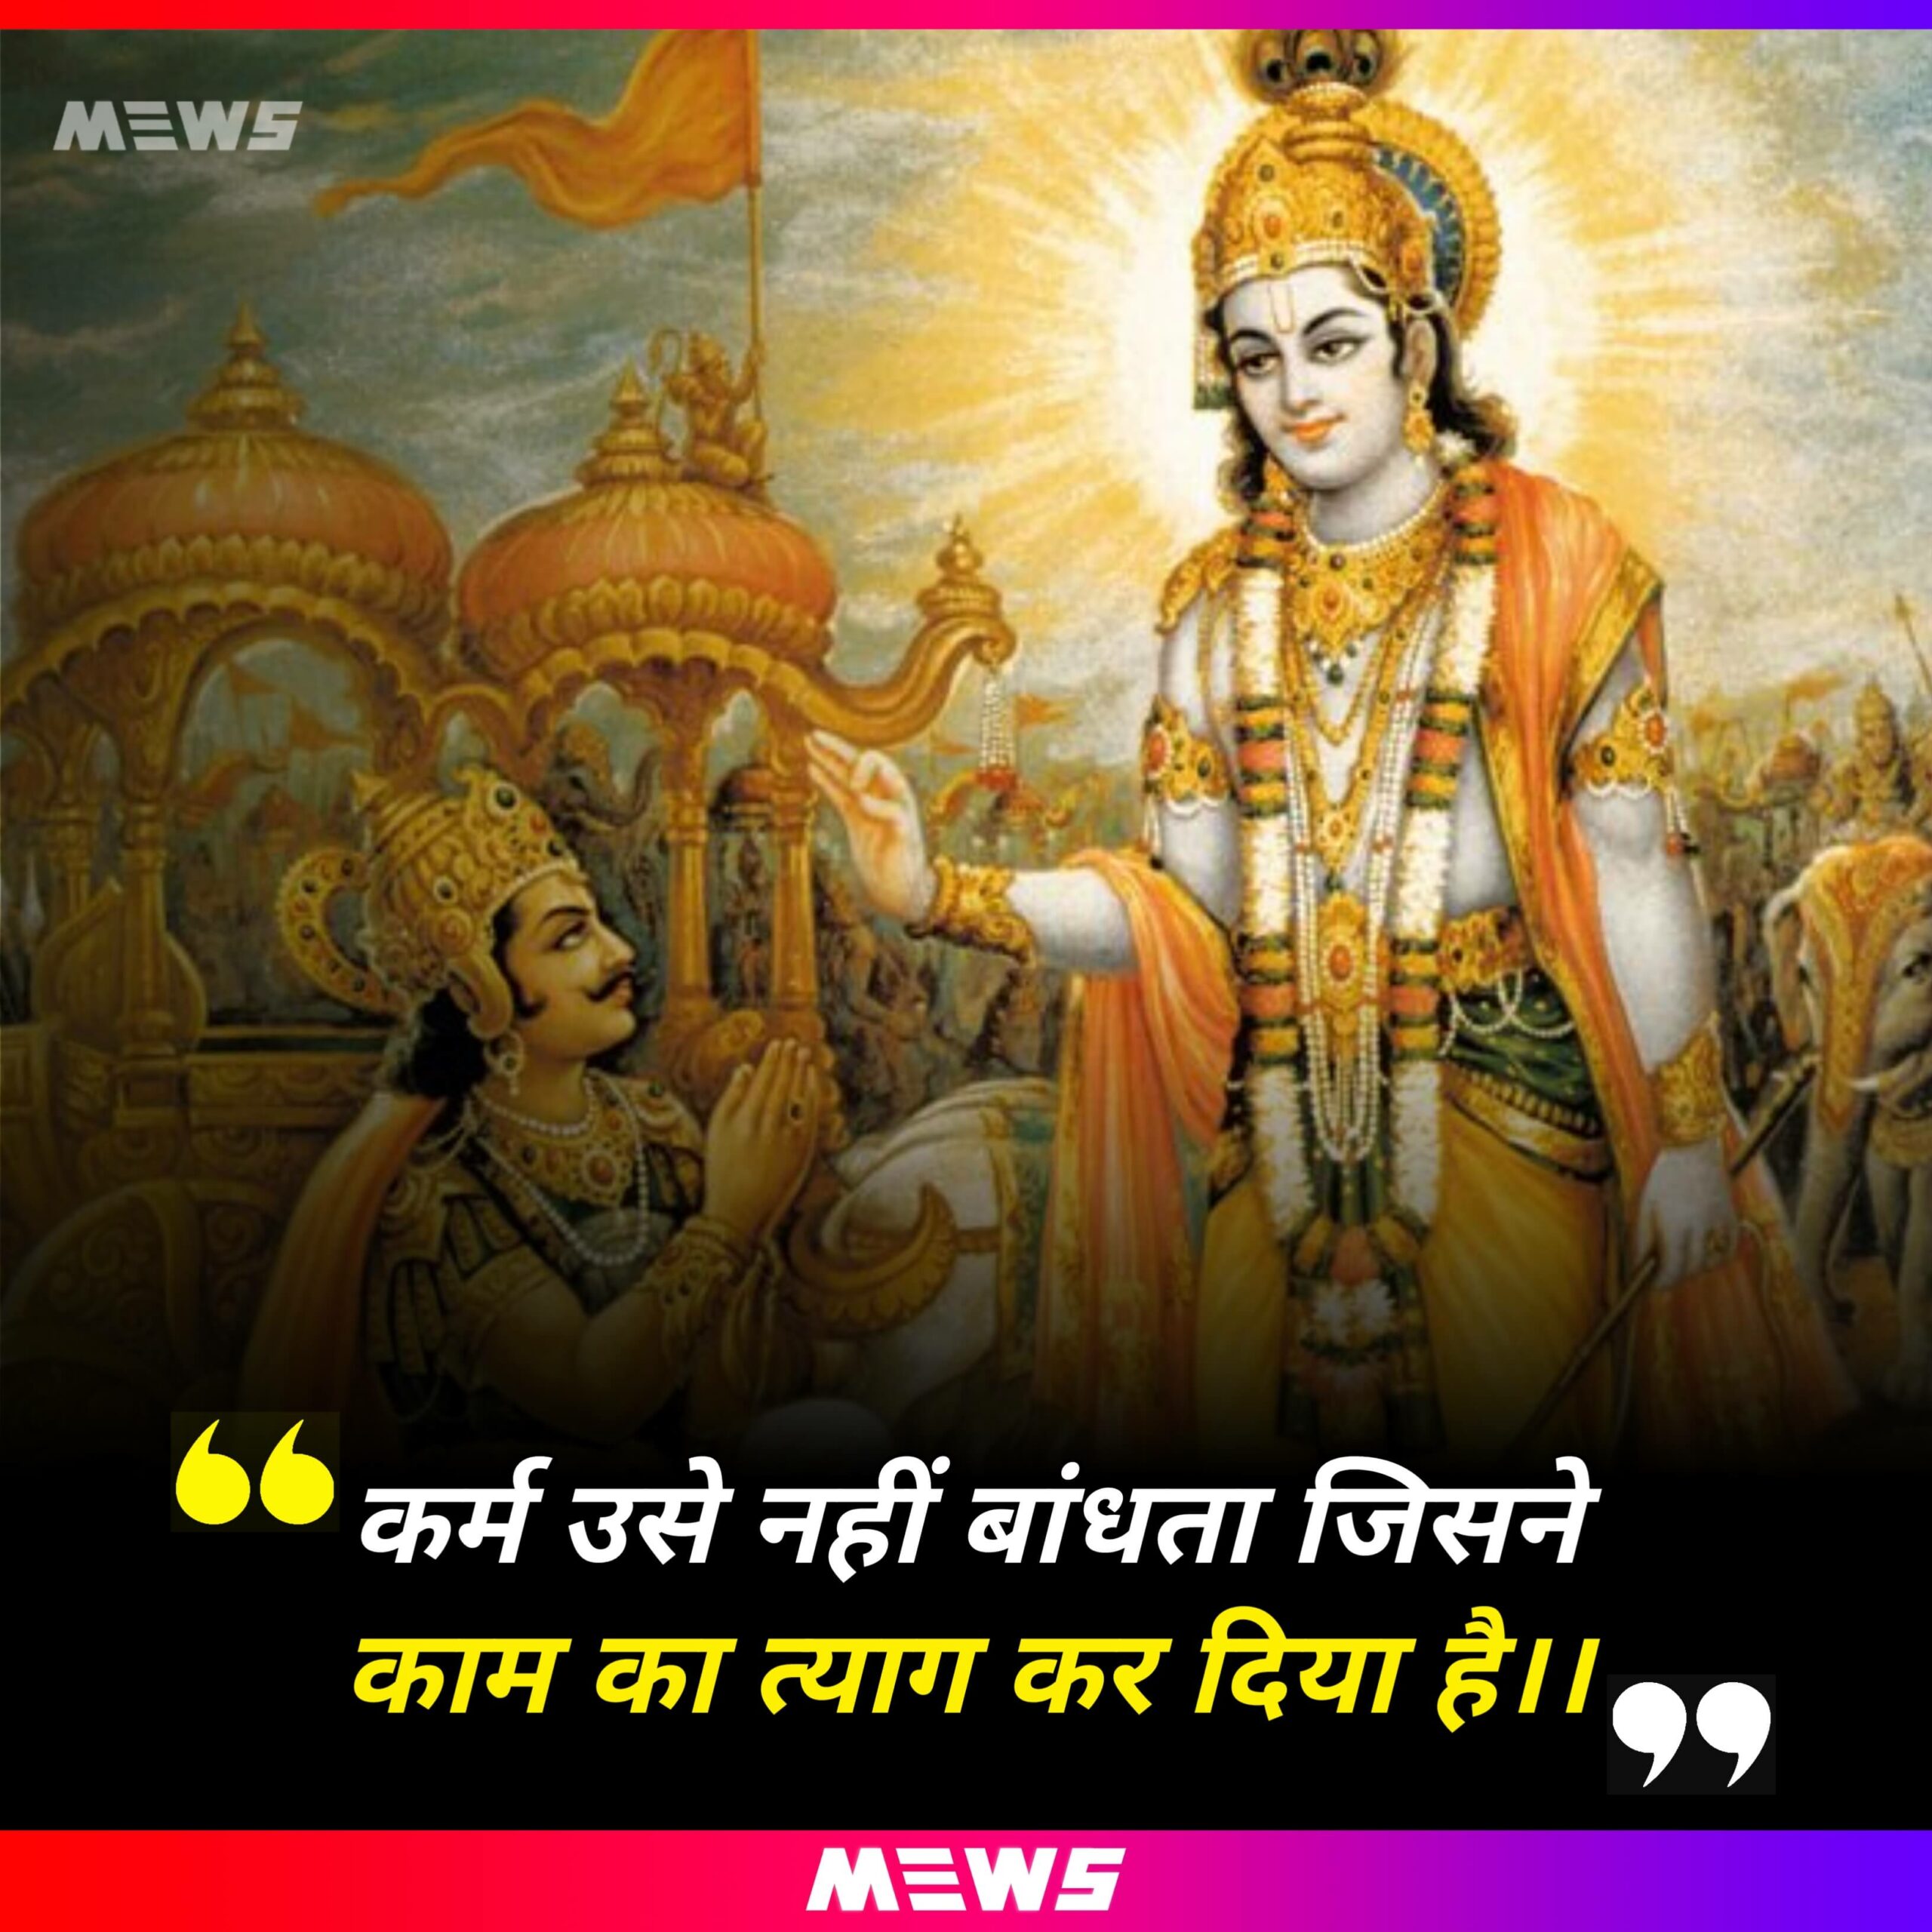 Quote of Lord Krishna in Hindi